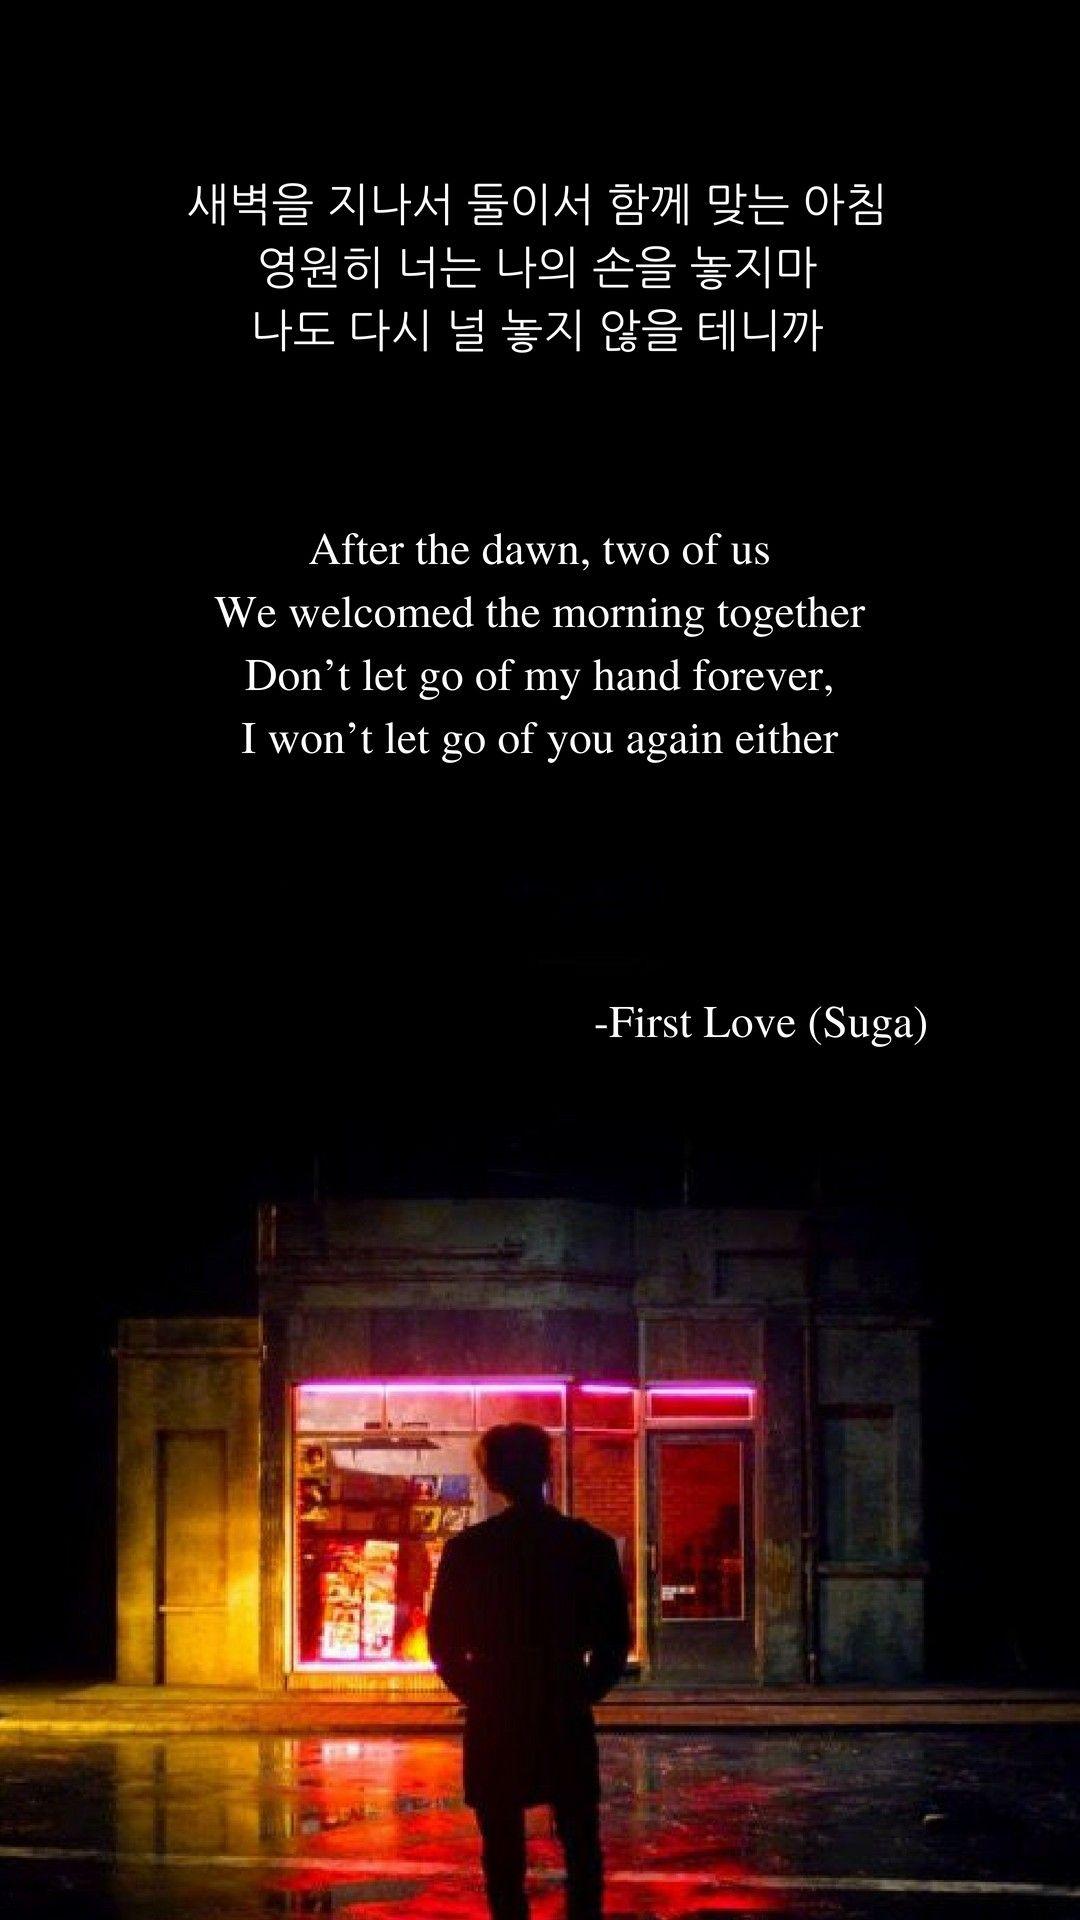 First Love (Suga, BTS) lyrics wallpaper. Bts lyric